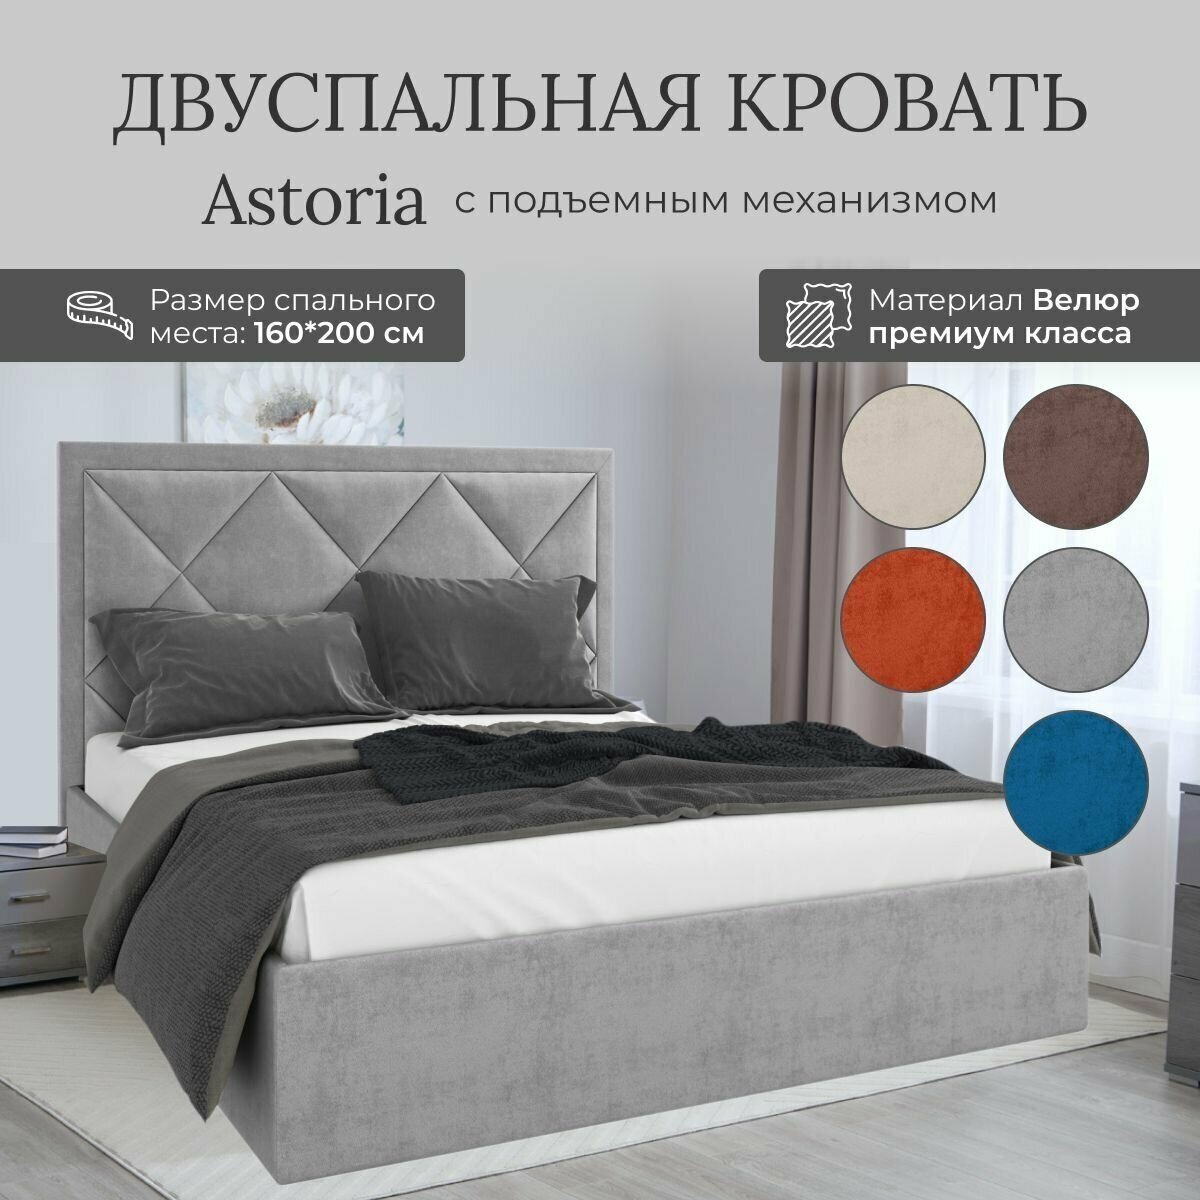 Кровать с подъемным механизмом Luxson Astoria двуспальная размер 160х200